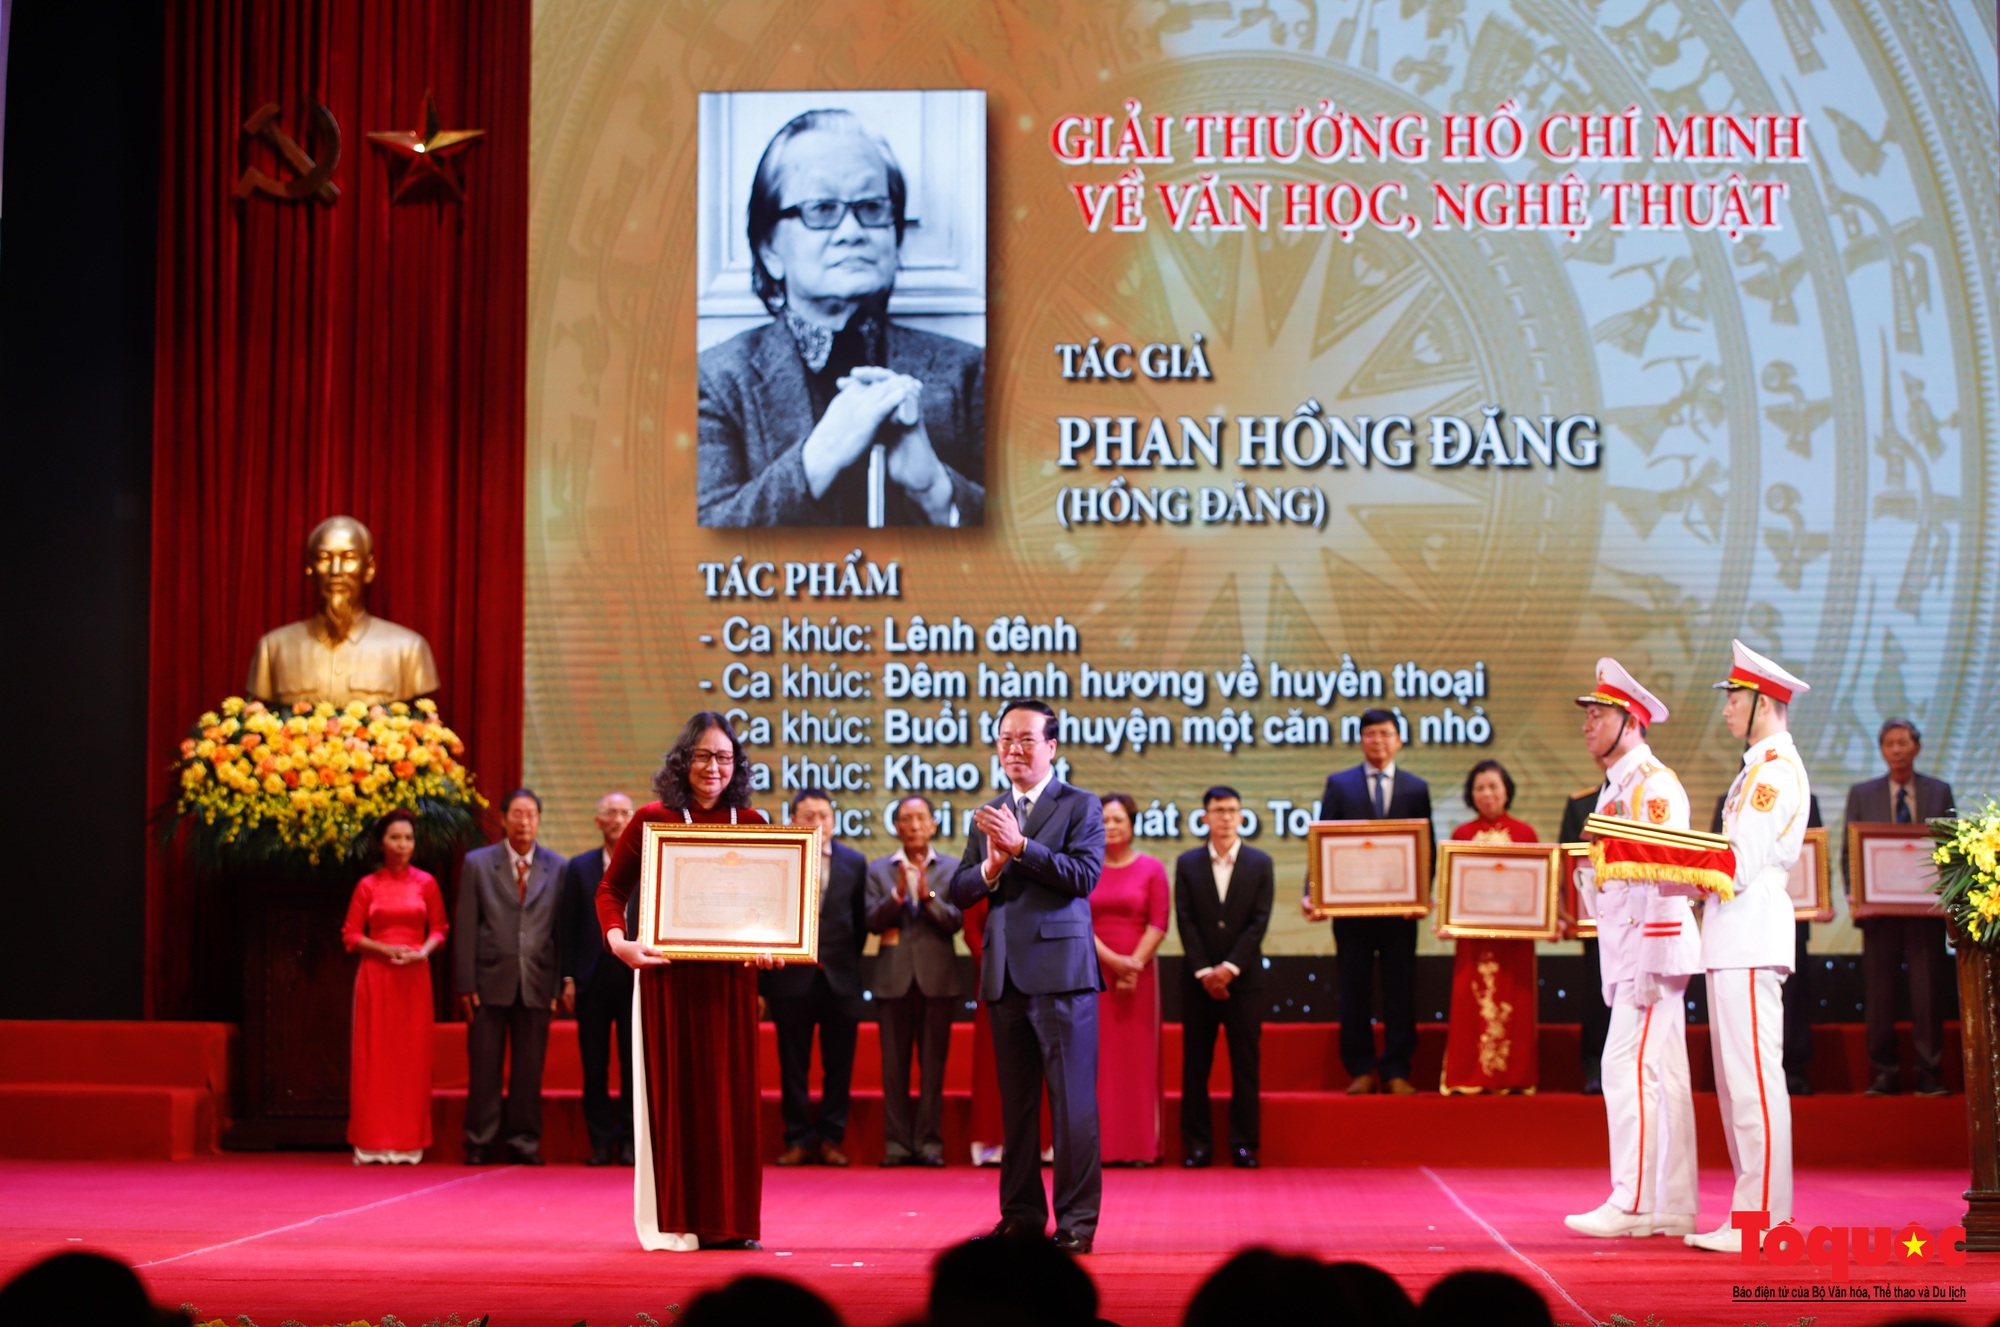 Chùm ảnh: Lễ trao Giải thưởng Hồ Chí Minh, Giải thưởng Nhà nước - Ảnh 8.